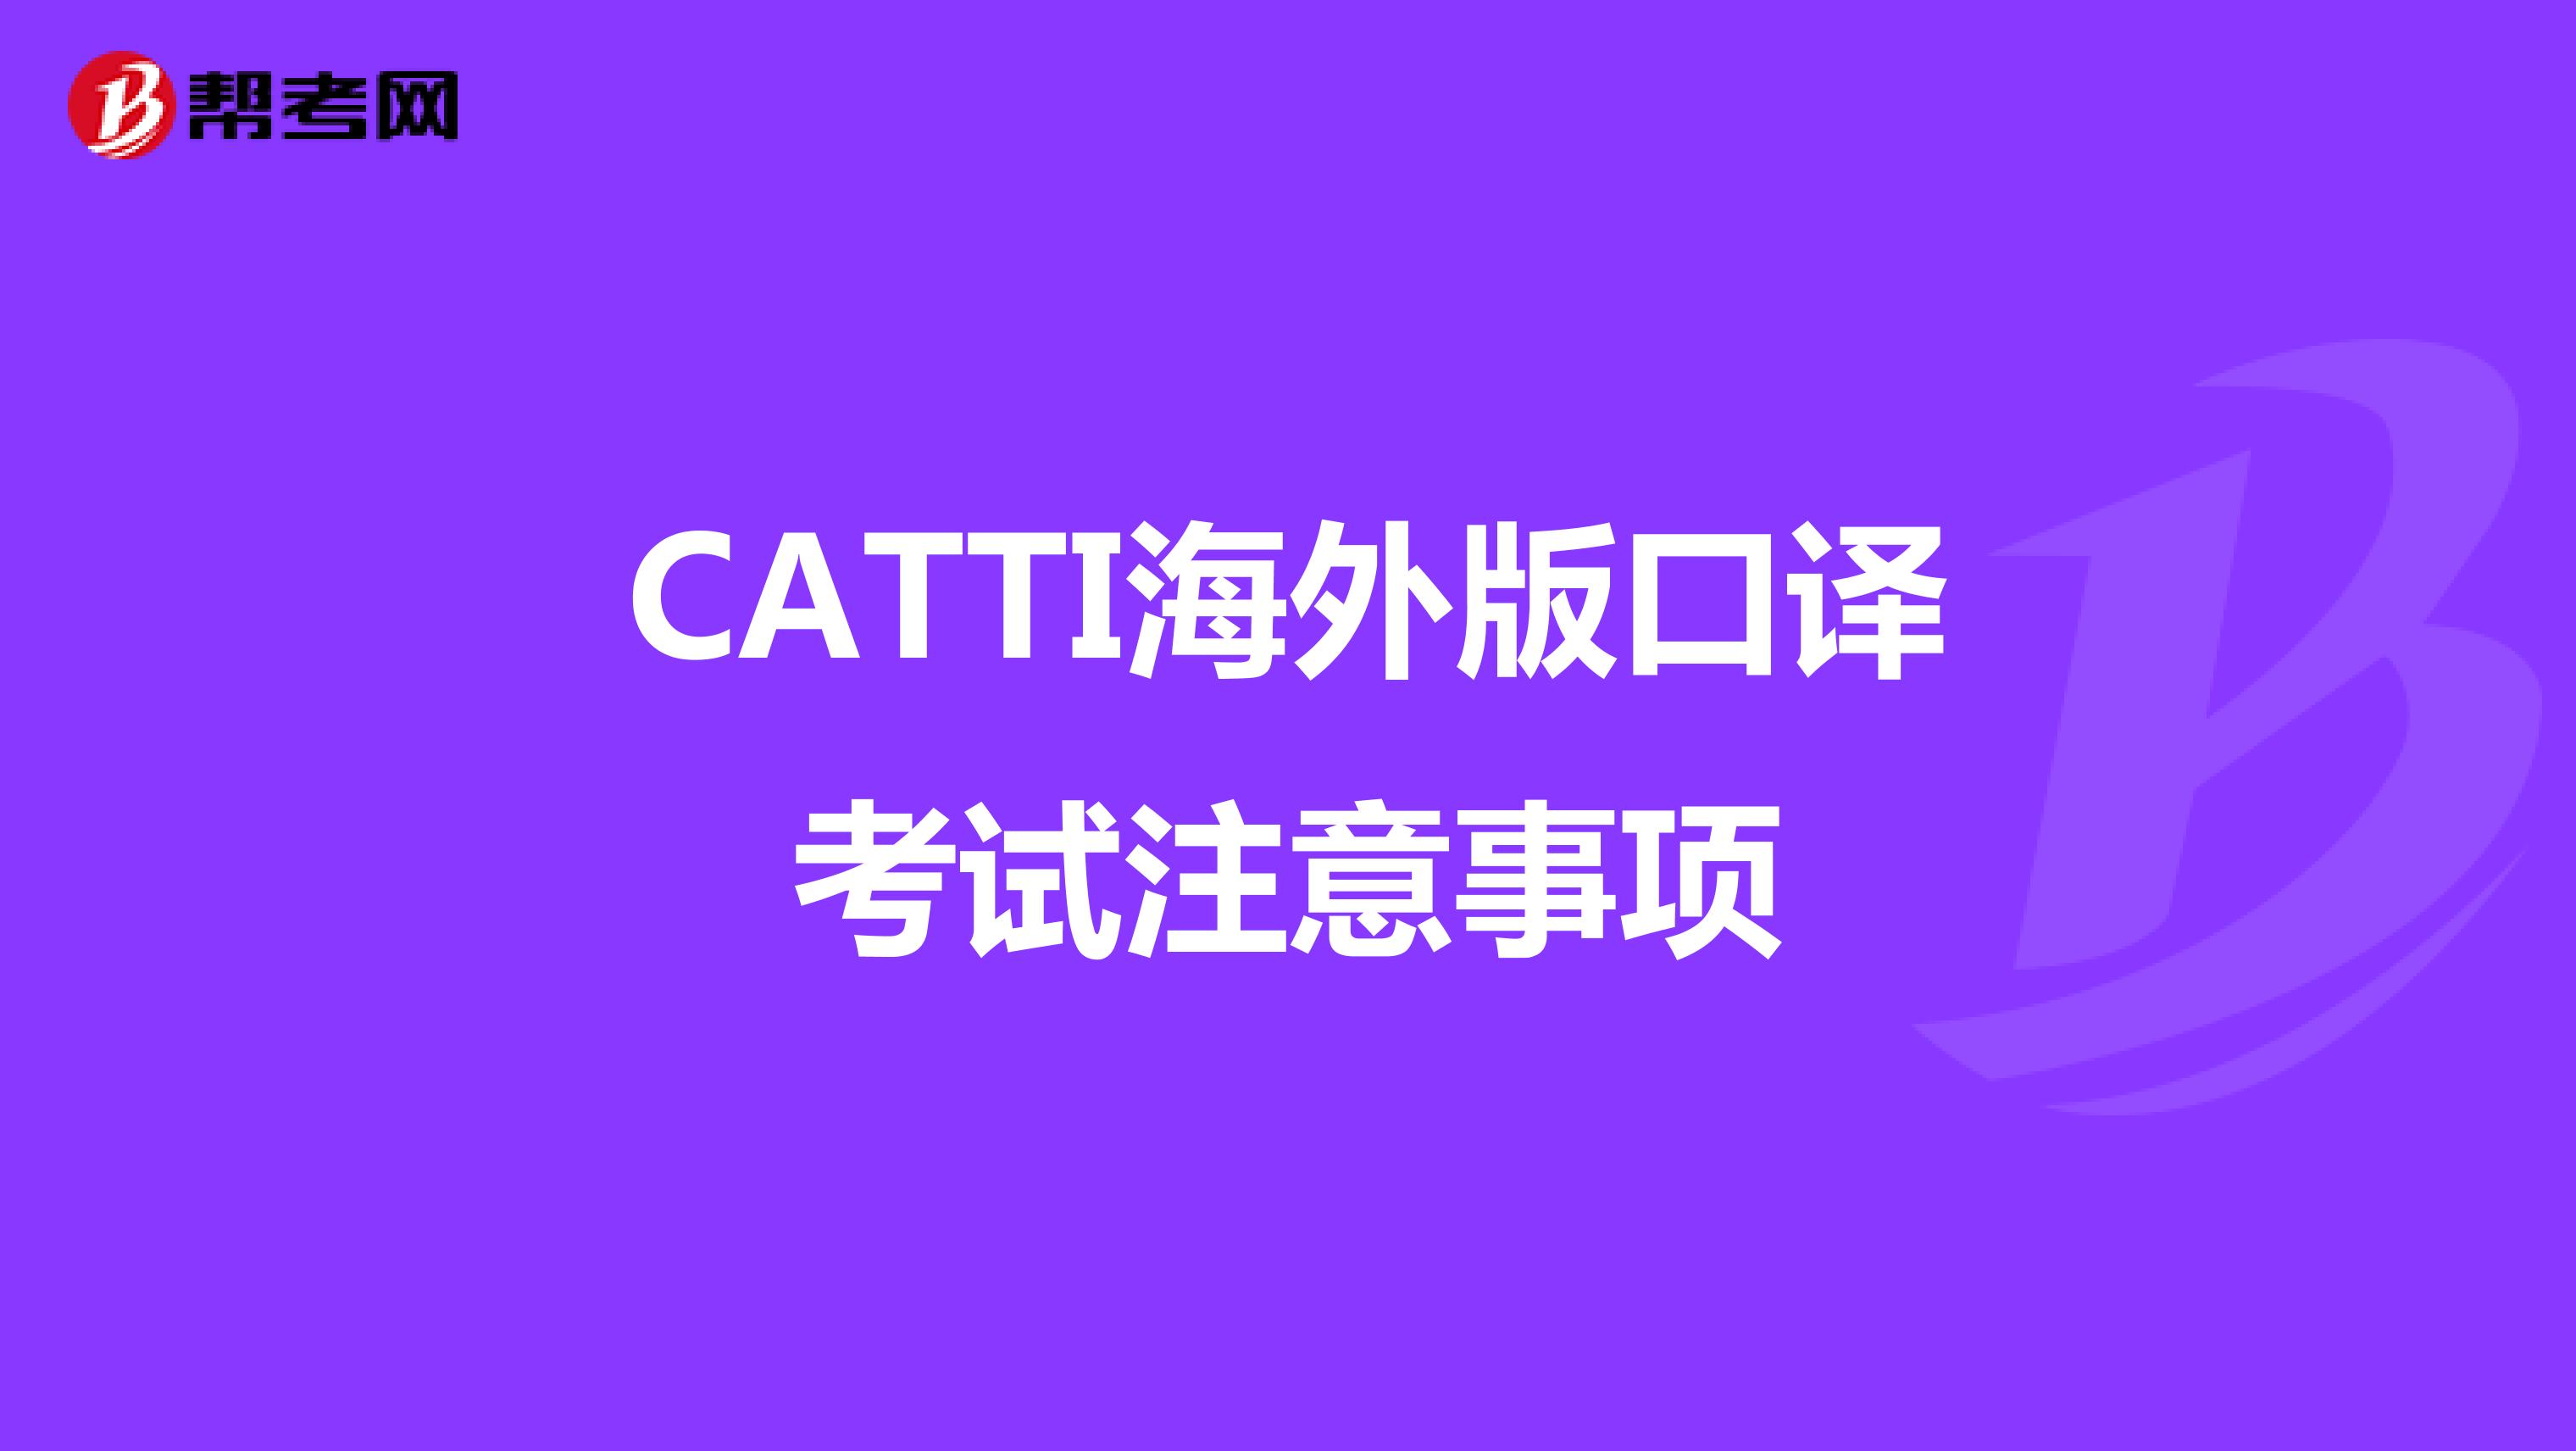 CATTI海外版口译考试注意事项